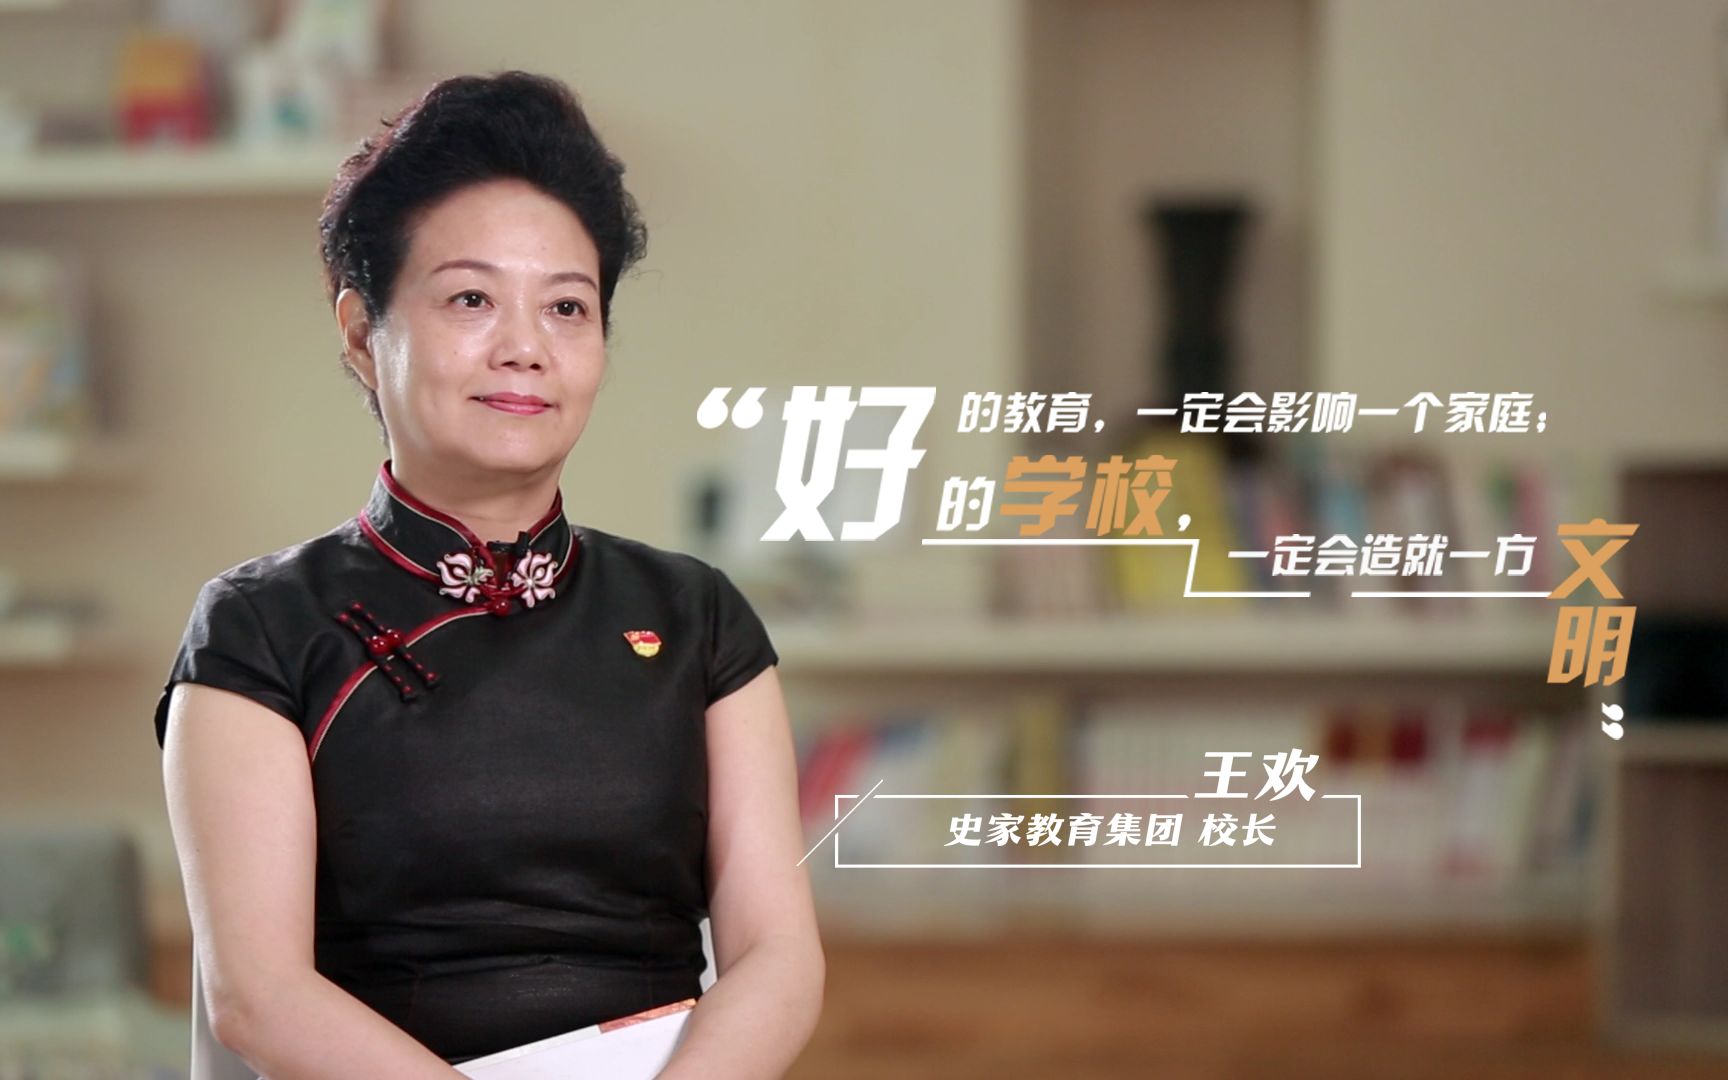 北京史家胡同小学校长王欢:我在一家超牛的学校当校长!